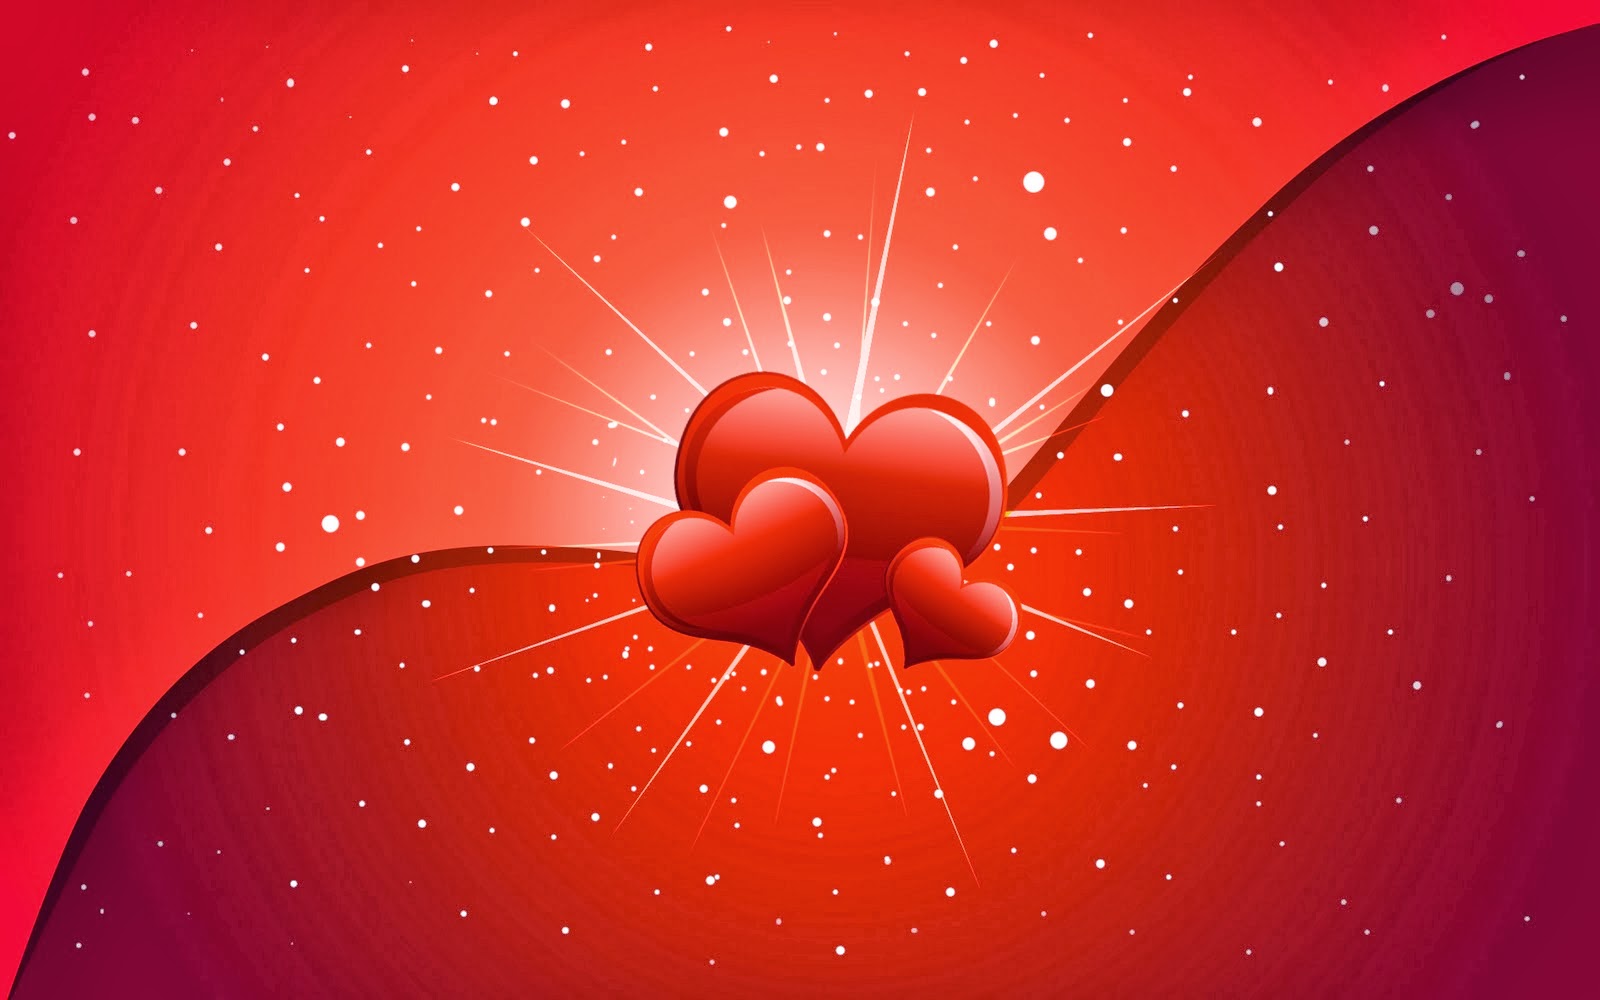 download di sfondi unici,rosso,cuore,san valentino,grafica,illustrazione